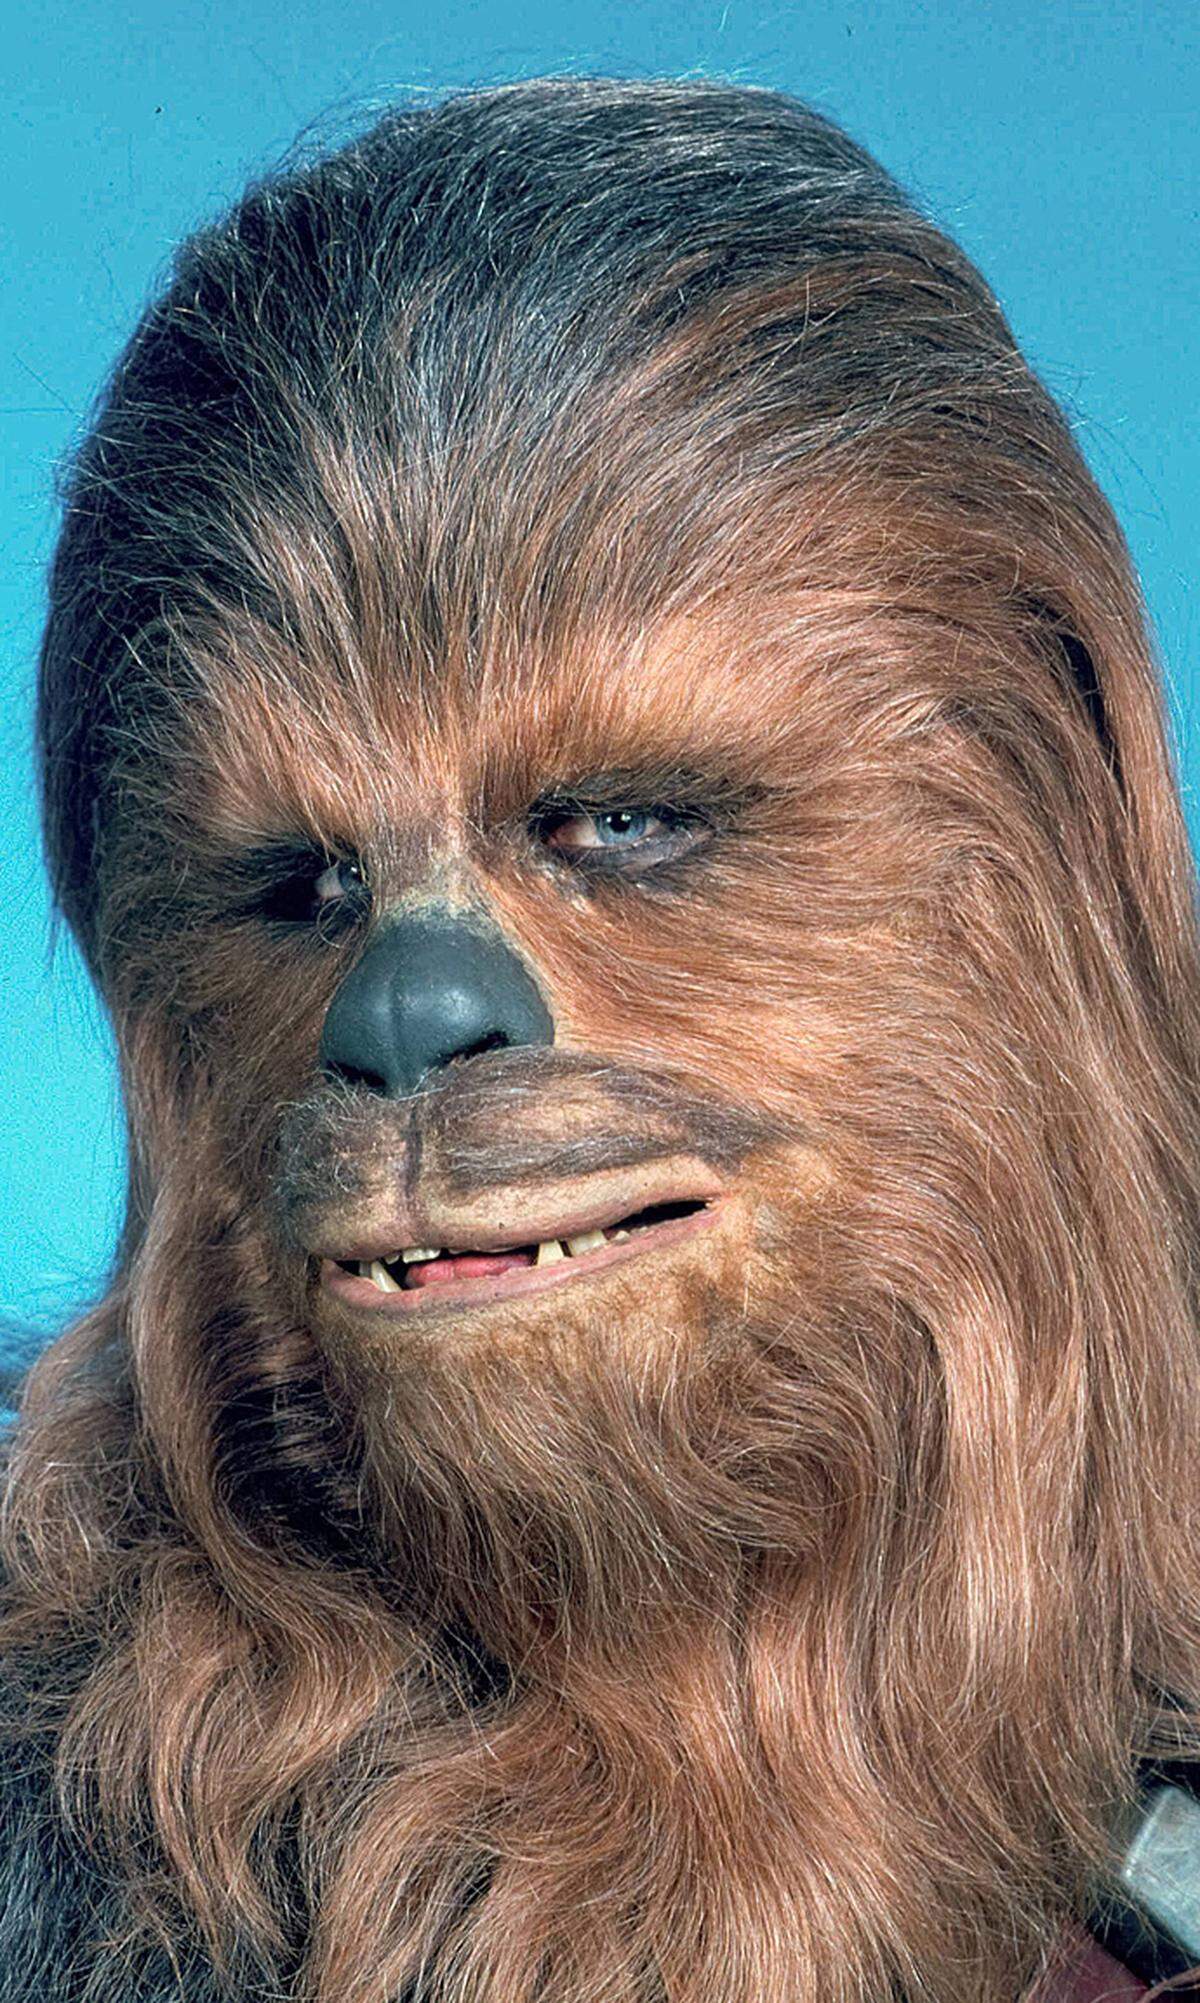 US-Schauspieler Peter Mayhew ist gestorben. Bekannt ist er für eine einzige, dafür sehr bekannte Rolle: die des Chewbacca in den "Star Wars"-Filmen. Chewbacca ist der bekannteste Vertreter der Spezies der "Wookiees", die auf dem Planeten Kashyyyk beheimatet ist und sich durch ein braunes Fell sowie überdurchschnittliche Größe auszeichnet. Er ist der Begleiter des corellianischen Schmugglers Han Solo.